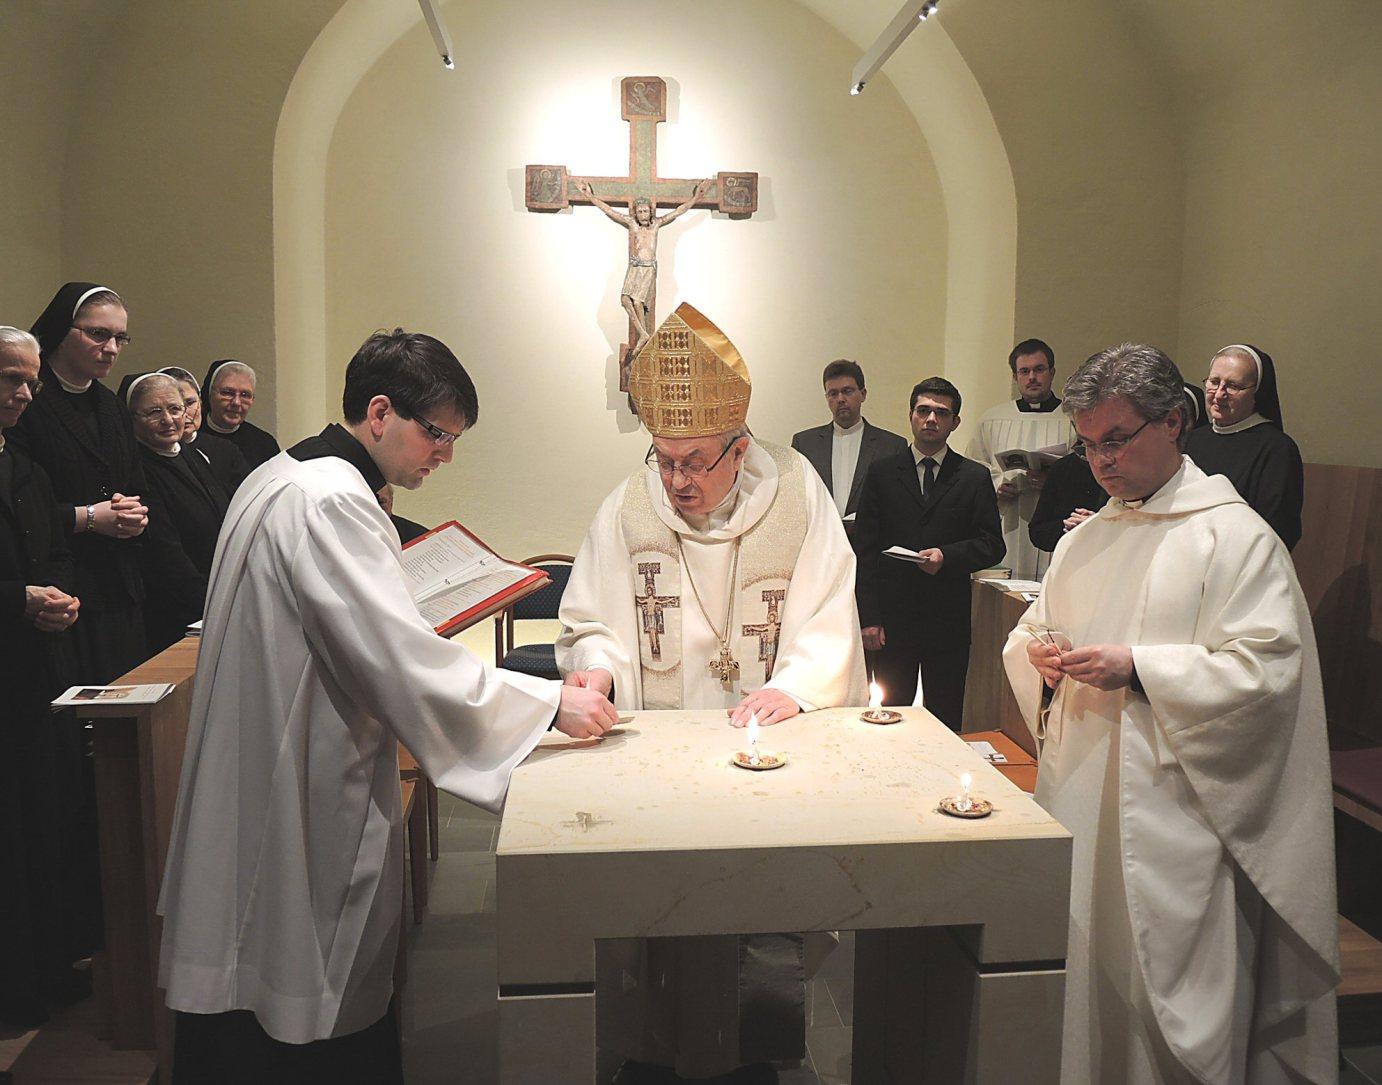 Mainz, 2. Februar 2014: Altarweihe in der St. Franzikus-Kapelle des Priesterseminars (v.l.n.r.): Bischofskaplan Johannes Zepezauer, Kardinal Karl Lehmann und Regens Udo Bentz.